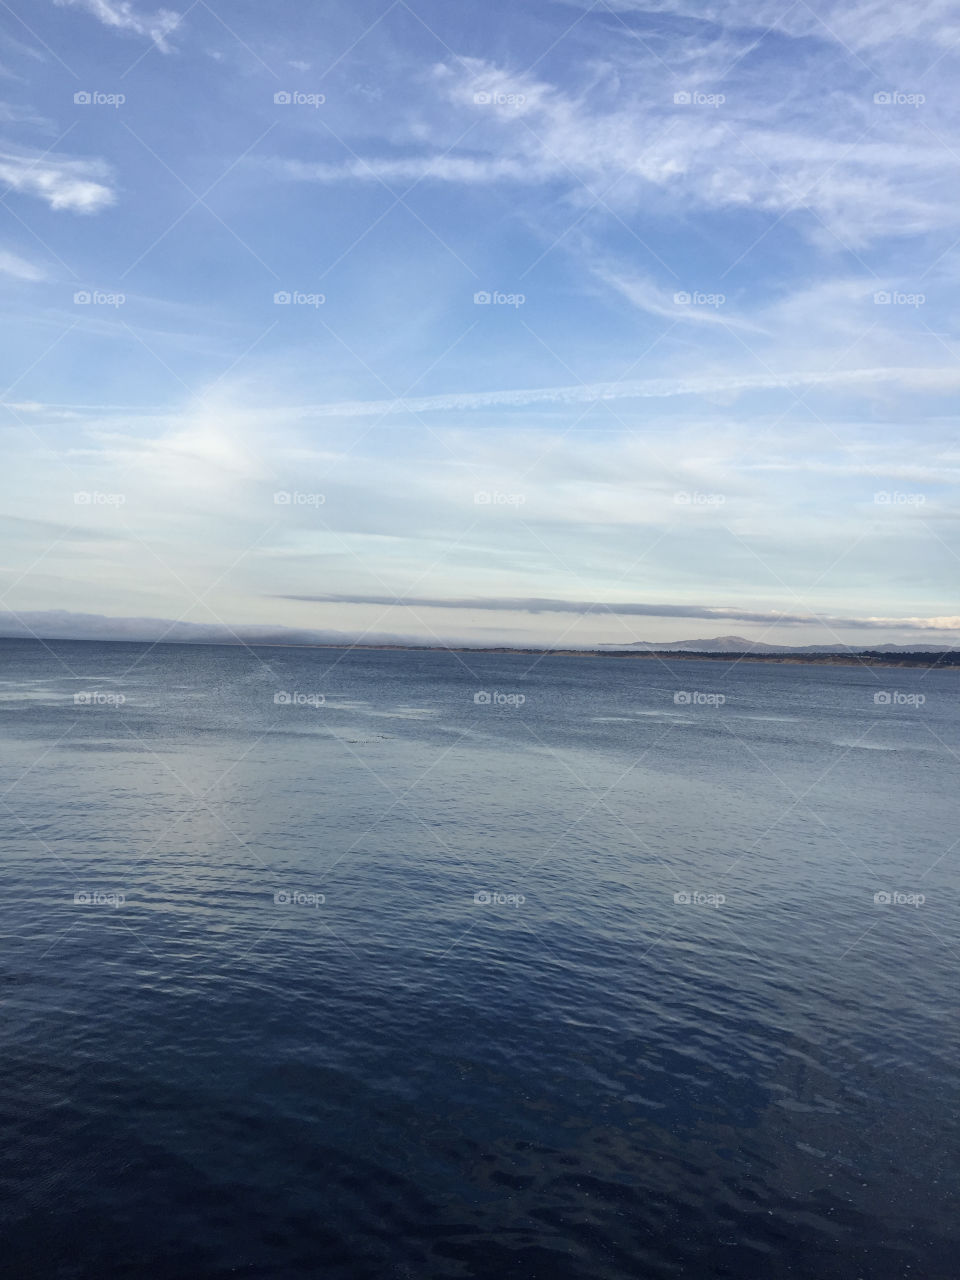 Ocean in Monterey California 